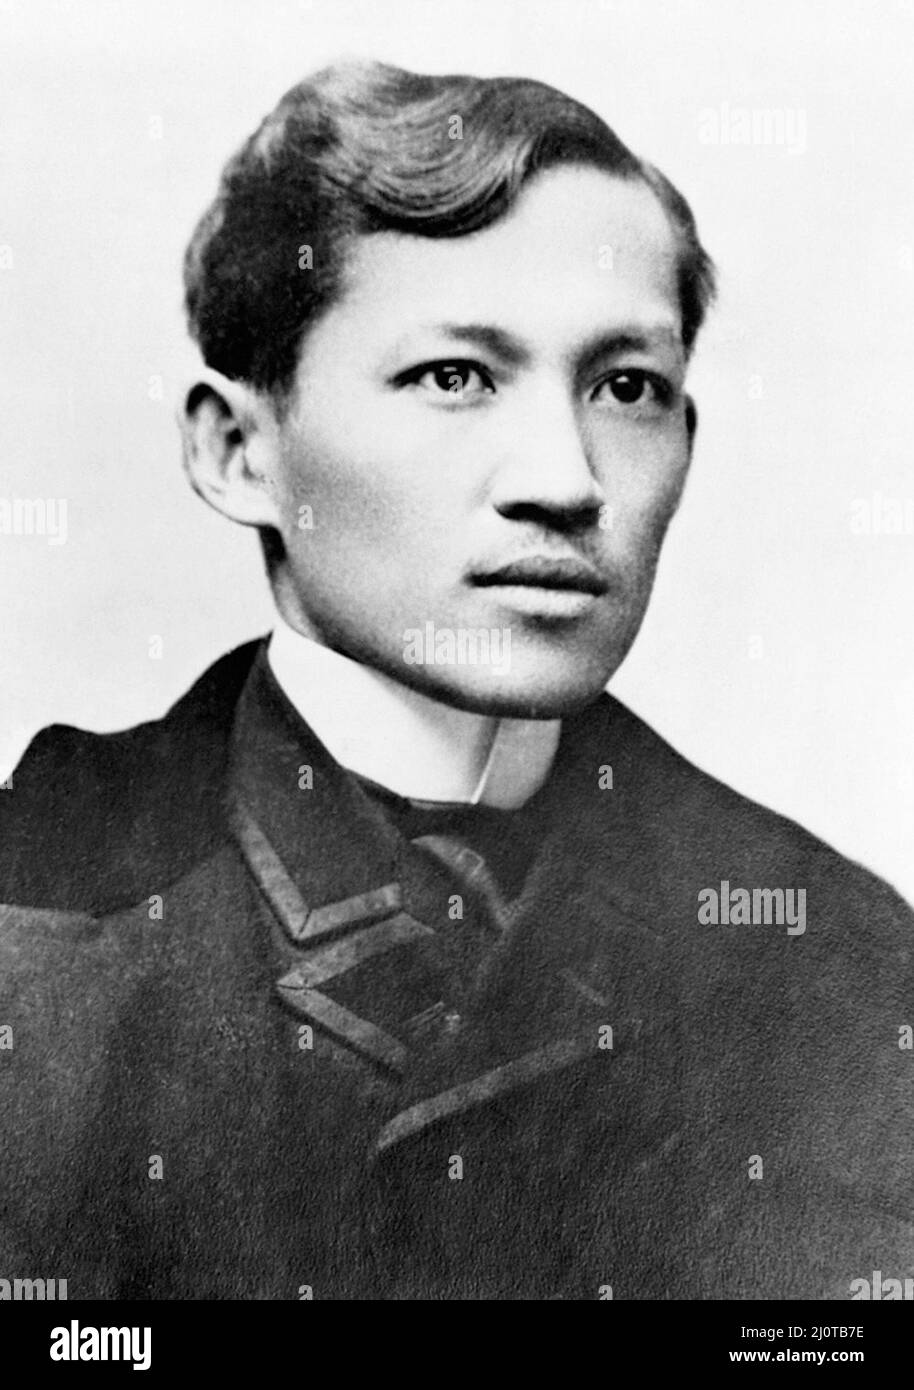 José Rizal, José Protasio Rizal Mercado y Alonso Realonda (1861 – 1896) nazionalista filippino, scrittore e polimato durante la fine del periodo coloniale spagnolo delle Filippine. È considerato l'eroe nazionale (pambansang bayani) delle Filippine. Foto Stock